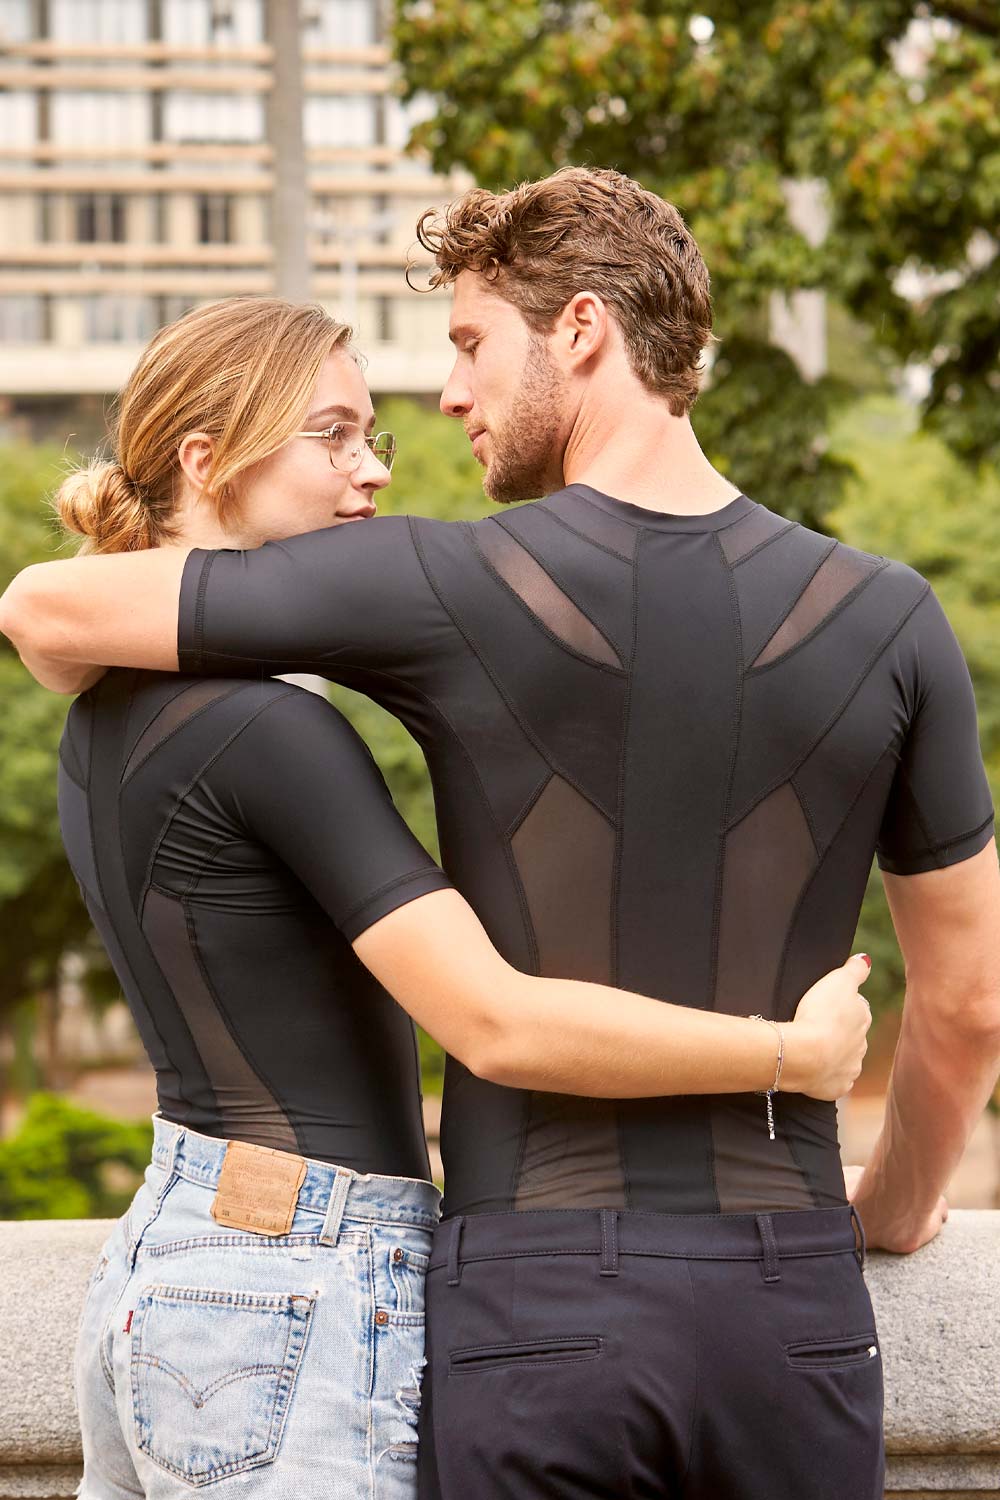 DEMO - Women's Posture Shirt™ - Svart